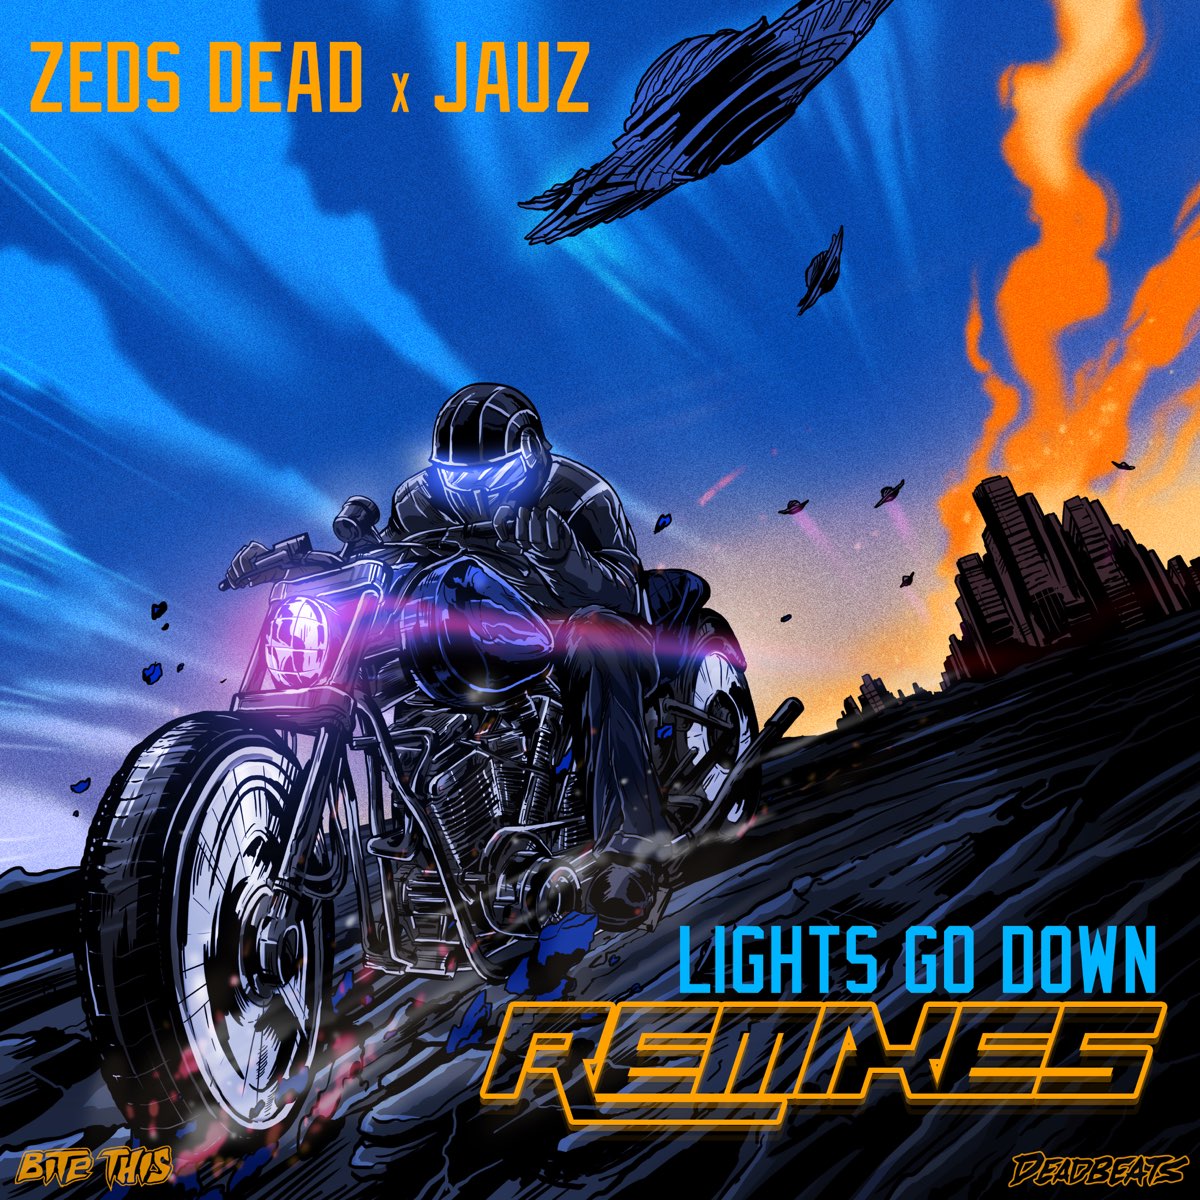 Down (Remixes) - Single by Zeds Dead & Jauz on Music